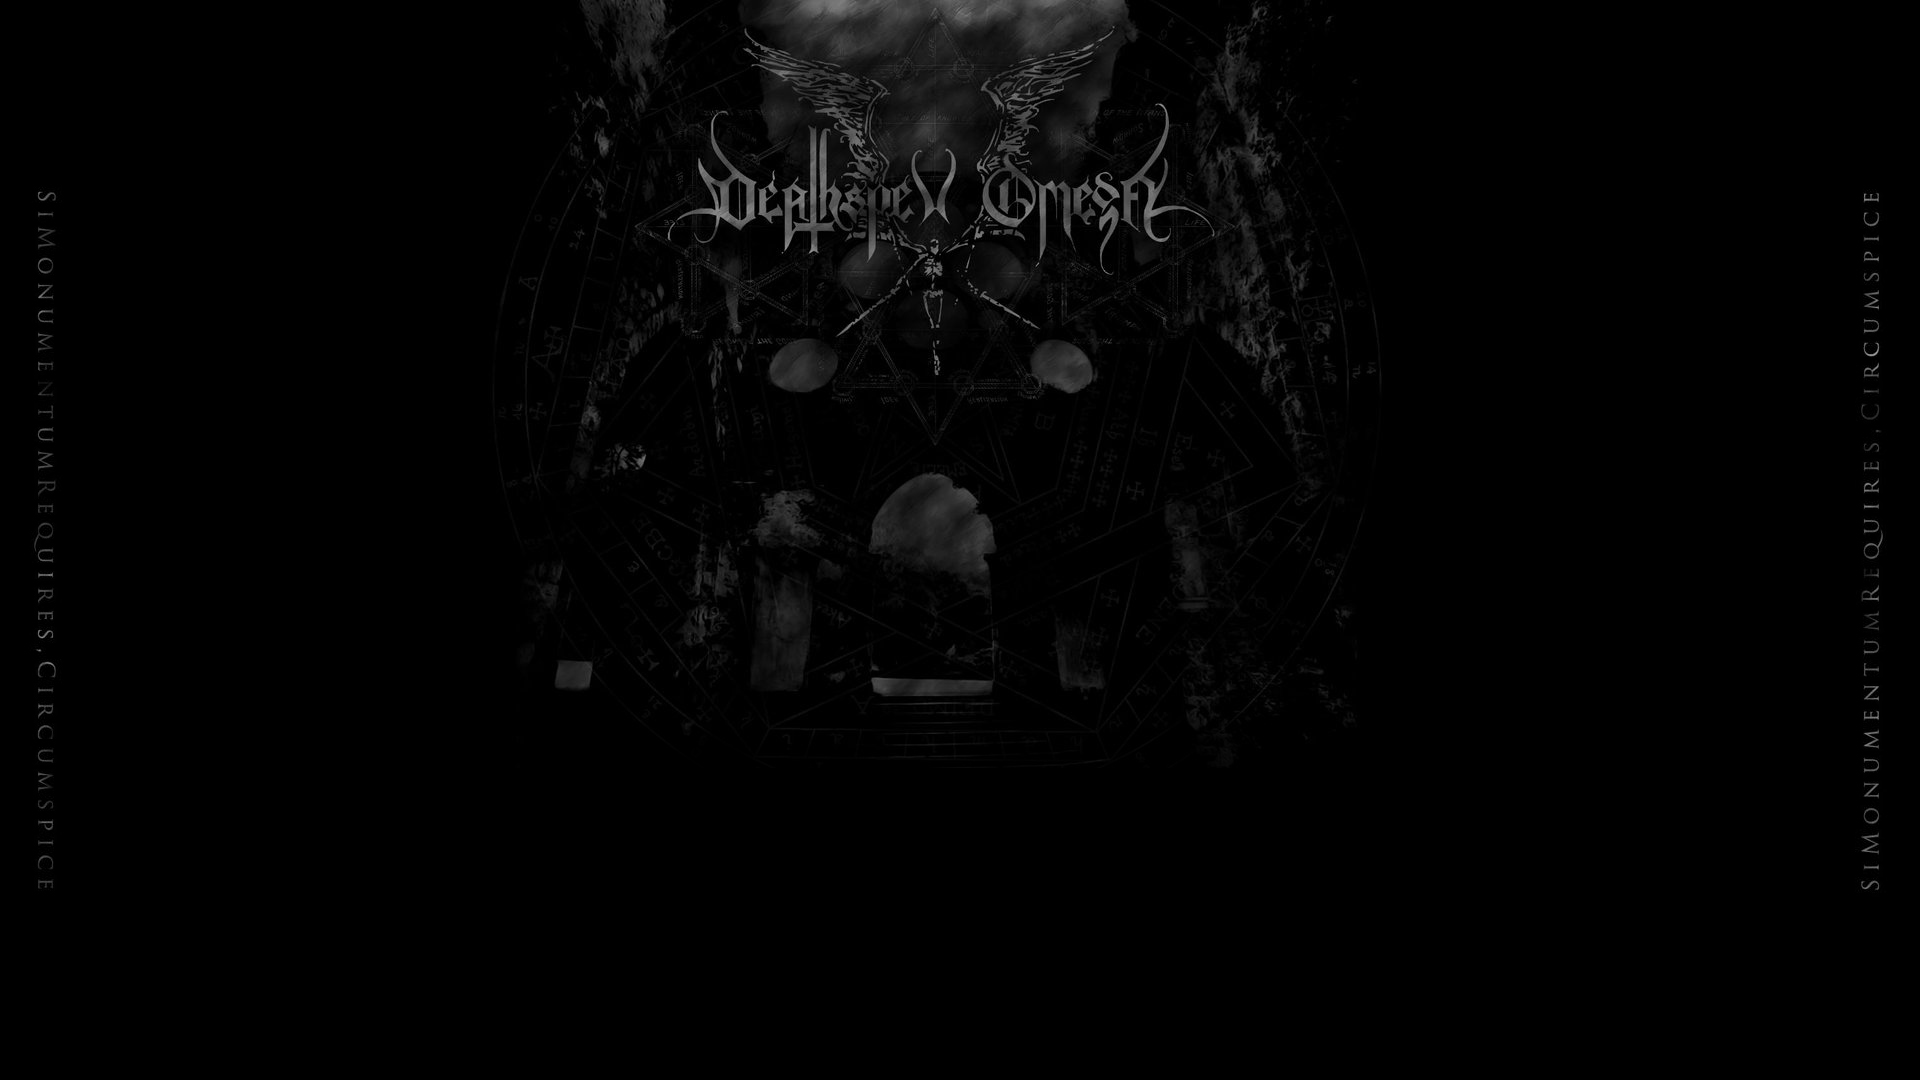 black metal, Deathspell Omega - desktop wallpaper